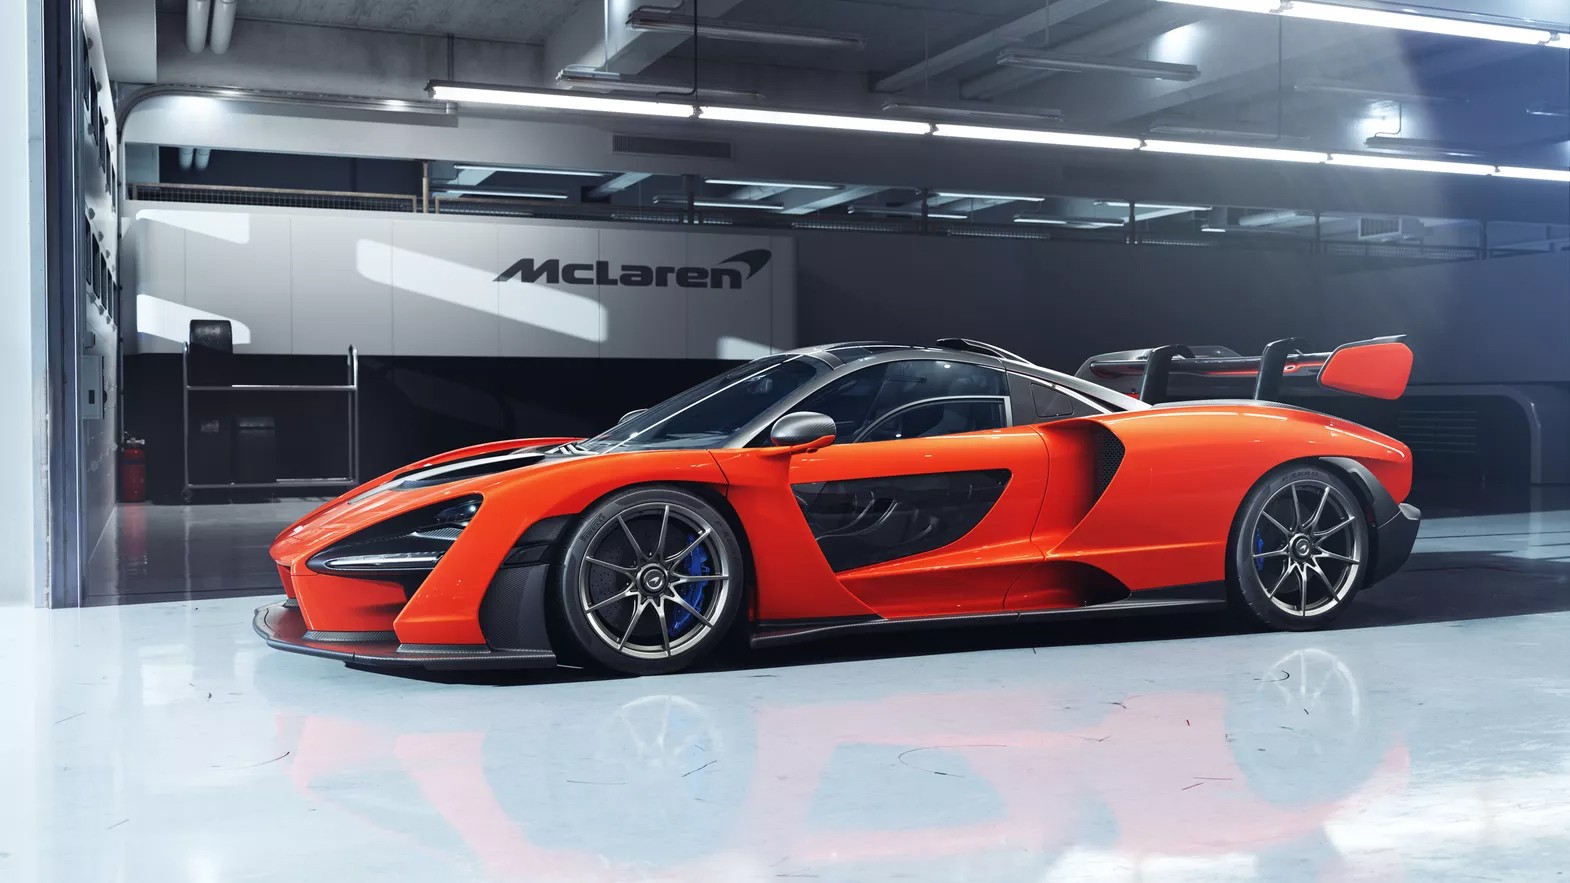 Фантастический гиперкар от McLaren раскупили до официального анонса